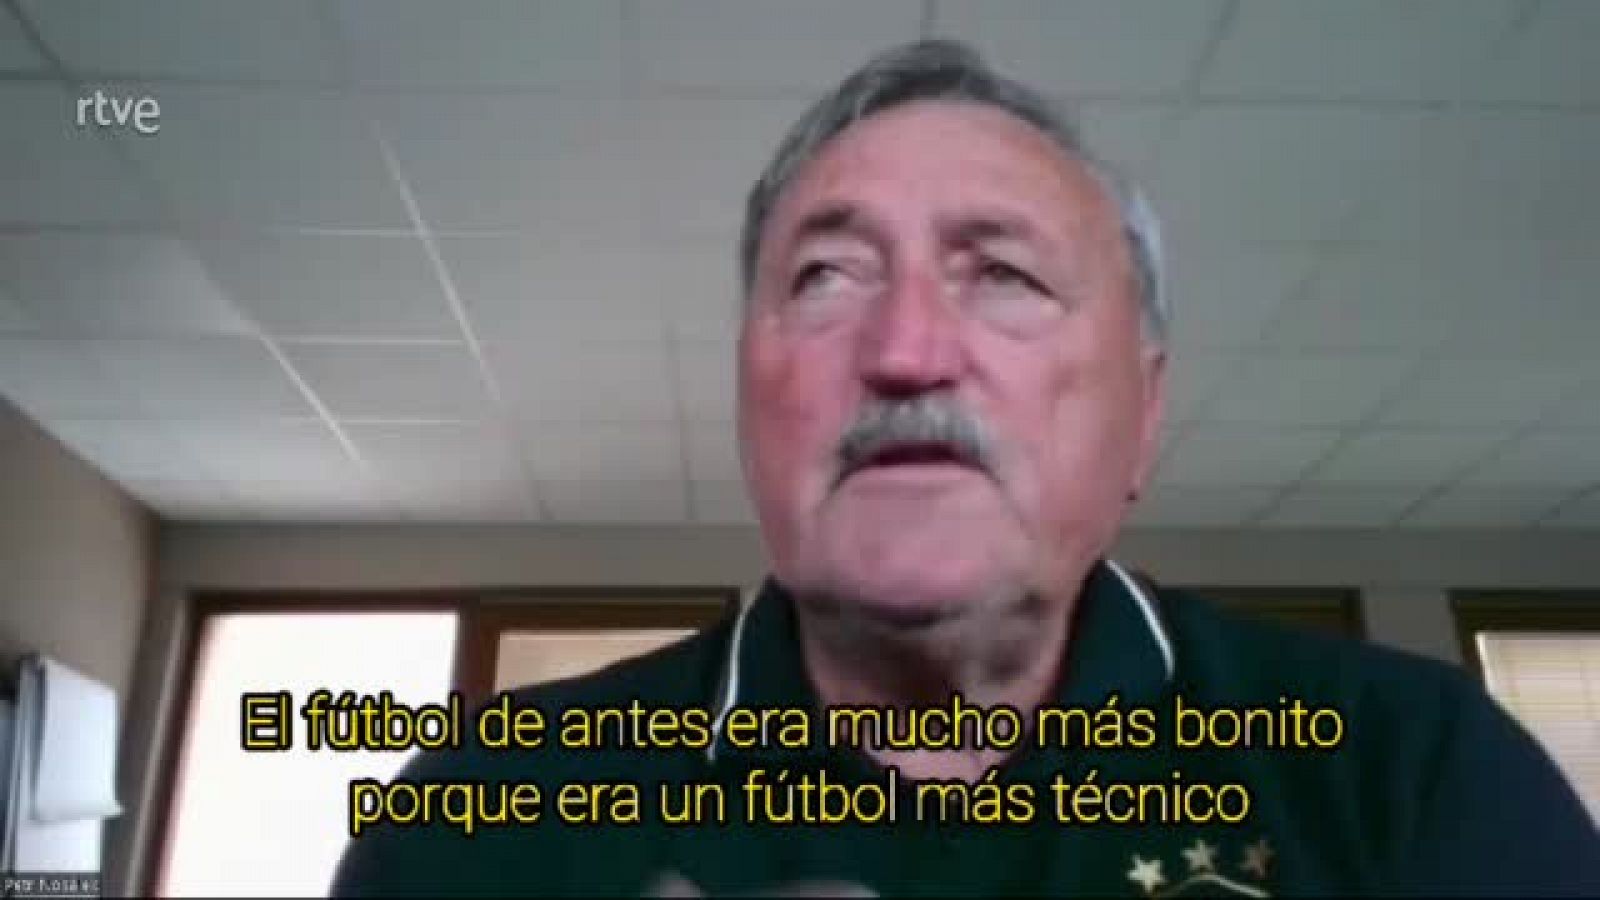 Antonín Panenka: "El fútbol de antes era mucho más bonito porque era un fútbol más técnico"